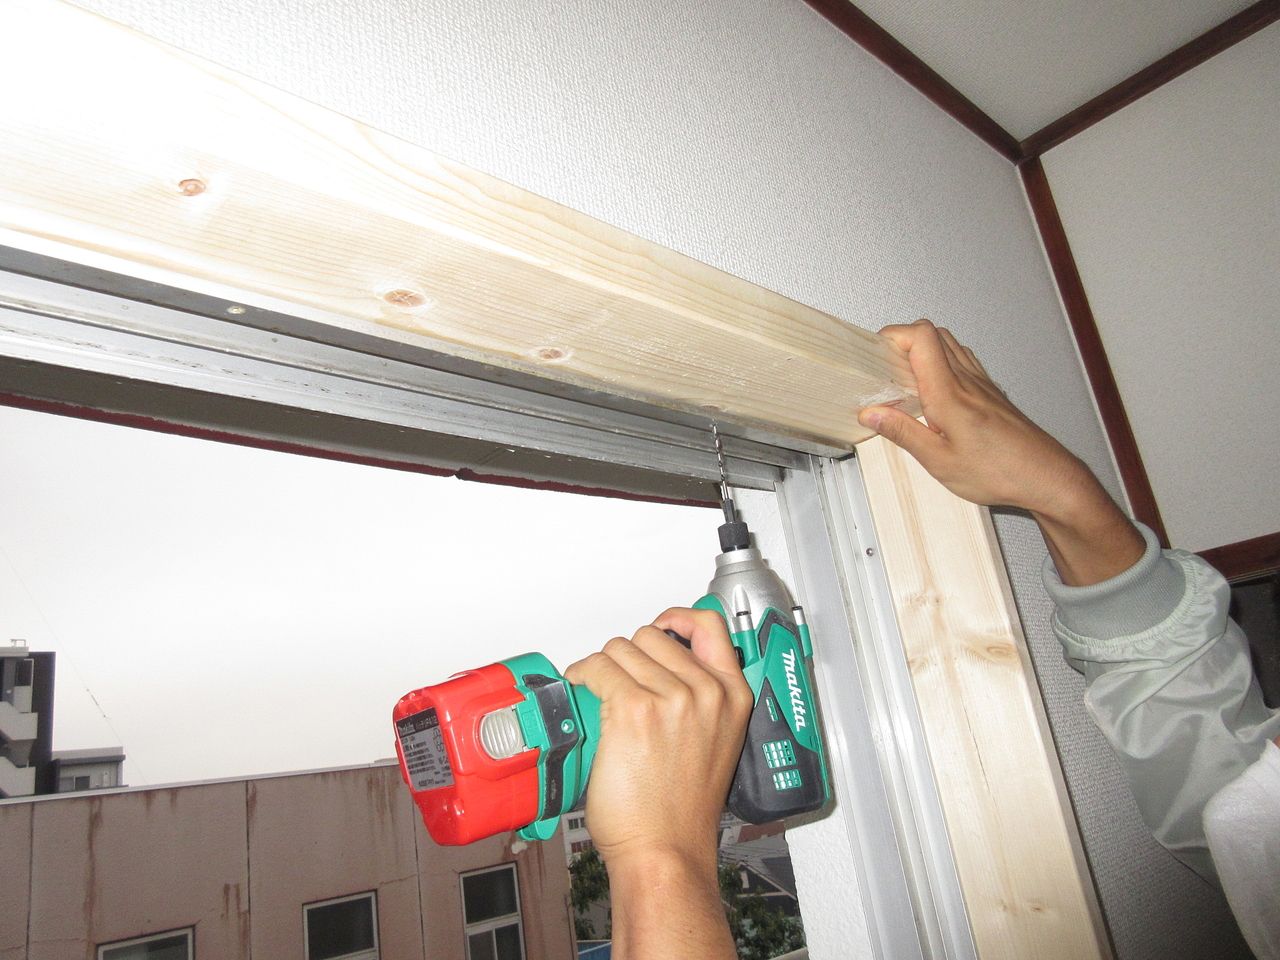 下穴をあけて既存の枠材を固定していたビスを使い、窓枠に新規枠材を固定します。